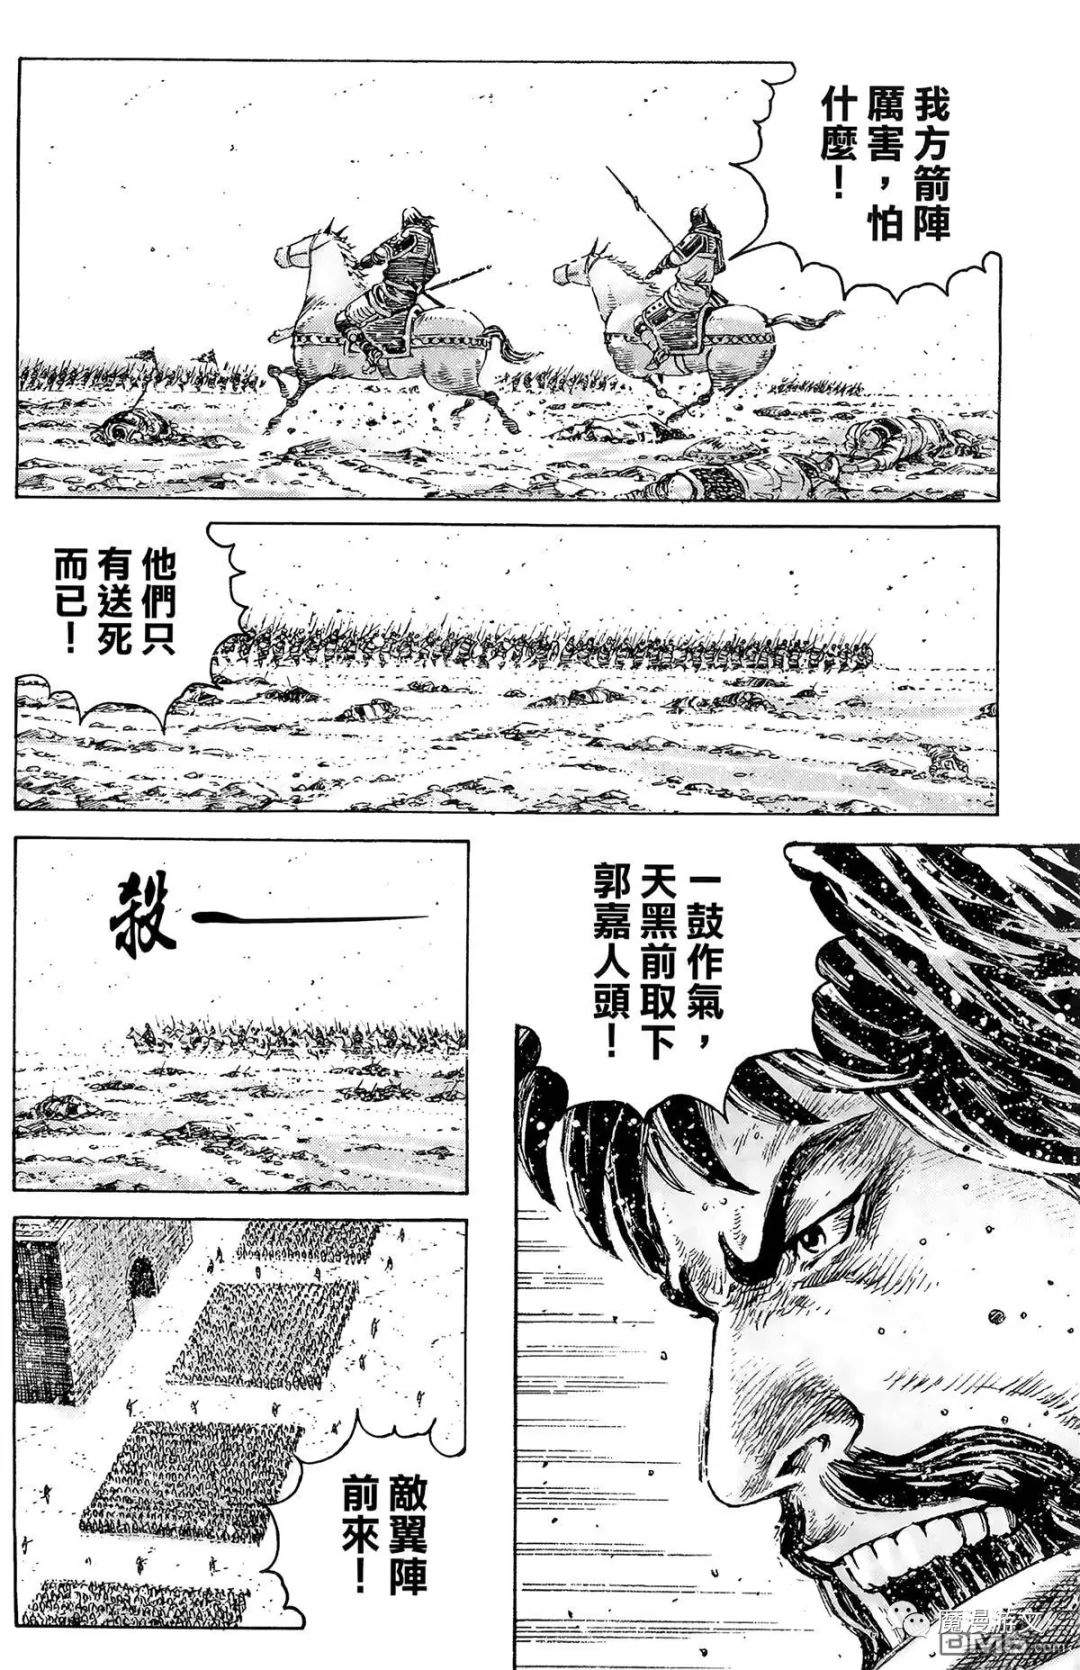 《火鳳燎原》第三十九卷 戲劇 第105張